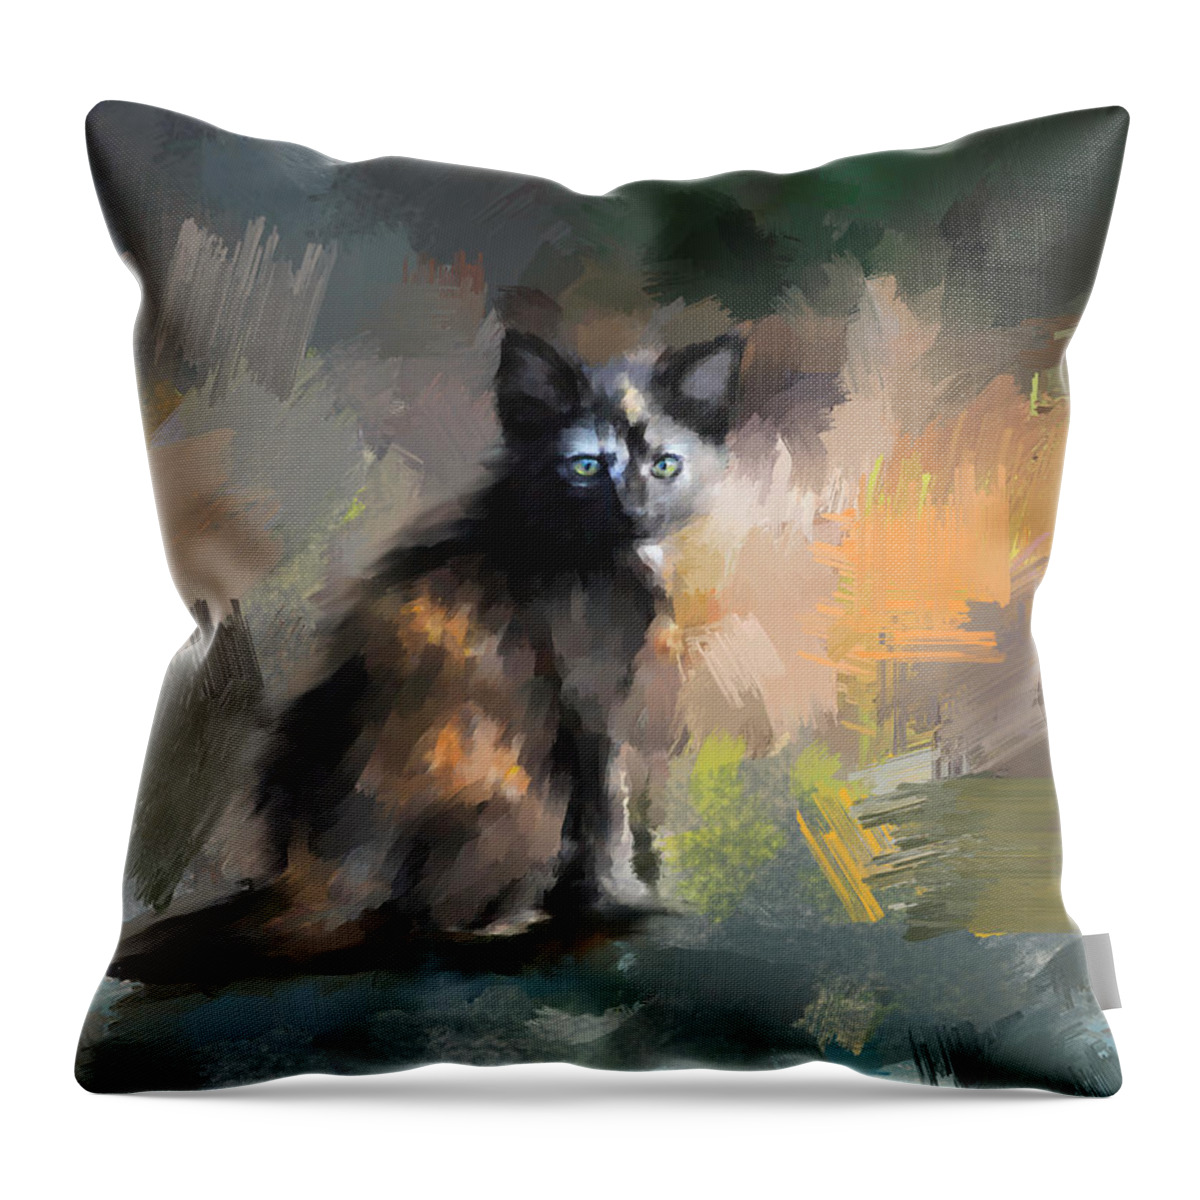 Kitten Throw Pillow featuring the painting Tortoiseshell Kitten #1 by Jai Johnson